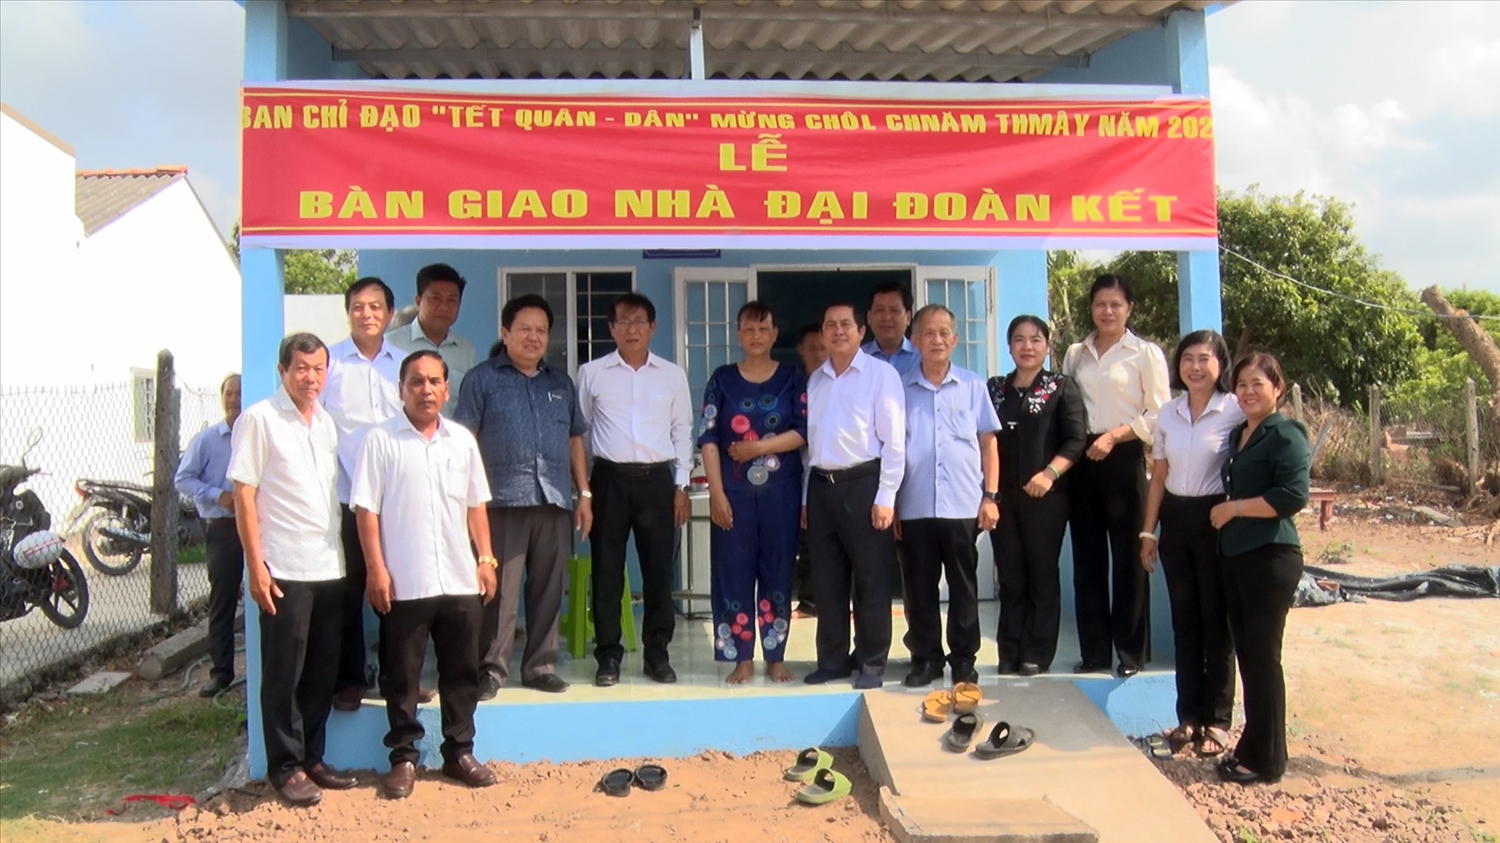 Ban Chỉ đạo “Tết Quân - Dân” mừng Chôl Chnăm Thmây năm 2024 trao nhà Đại đoàn kết cho hộ đồng bào nghèo dân tộc Khmer